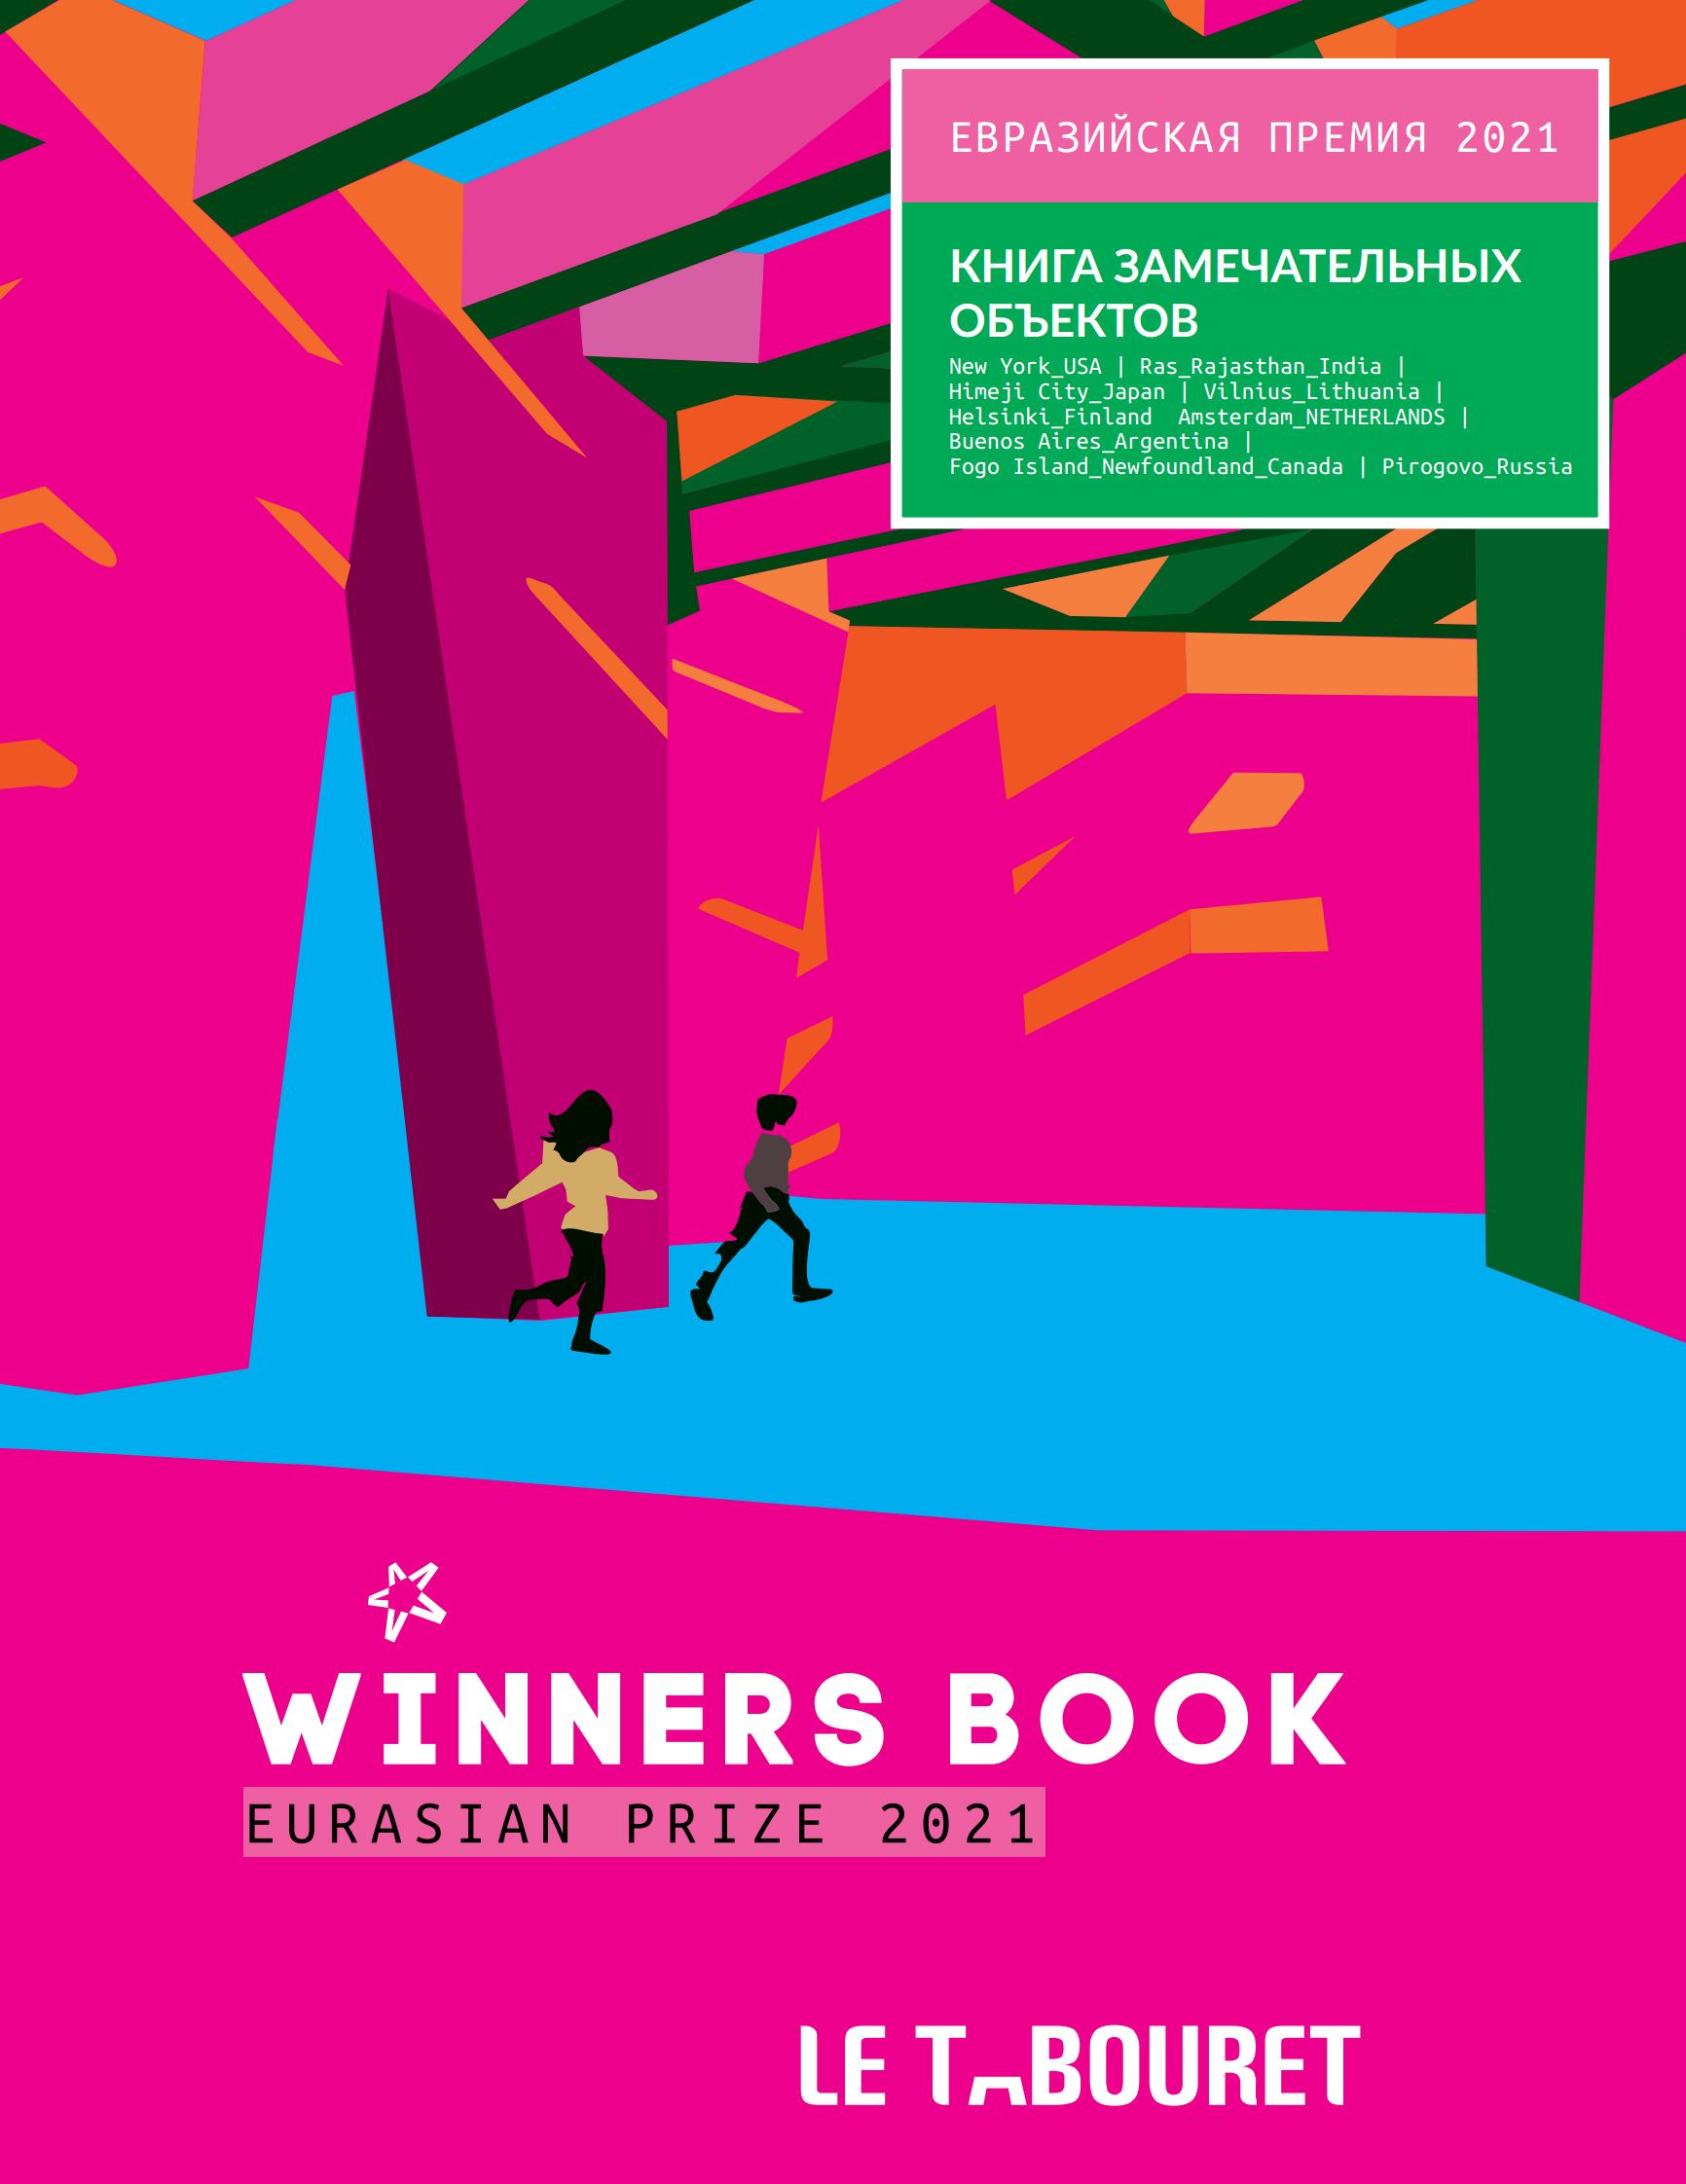 Евразийская премия 2021 : Книга замечательных объектов = Eurasian Prize 2021 : Winners book. — Екатеринбург, 2021